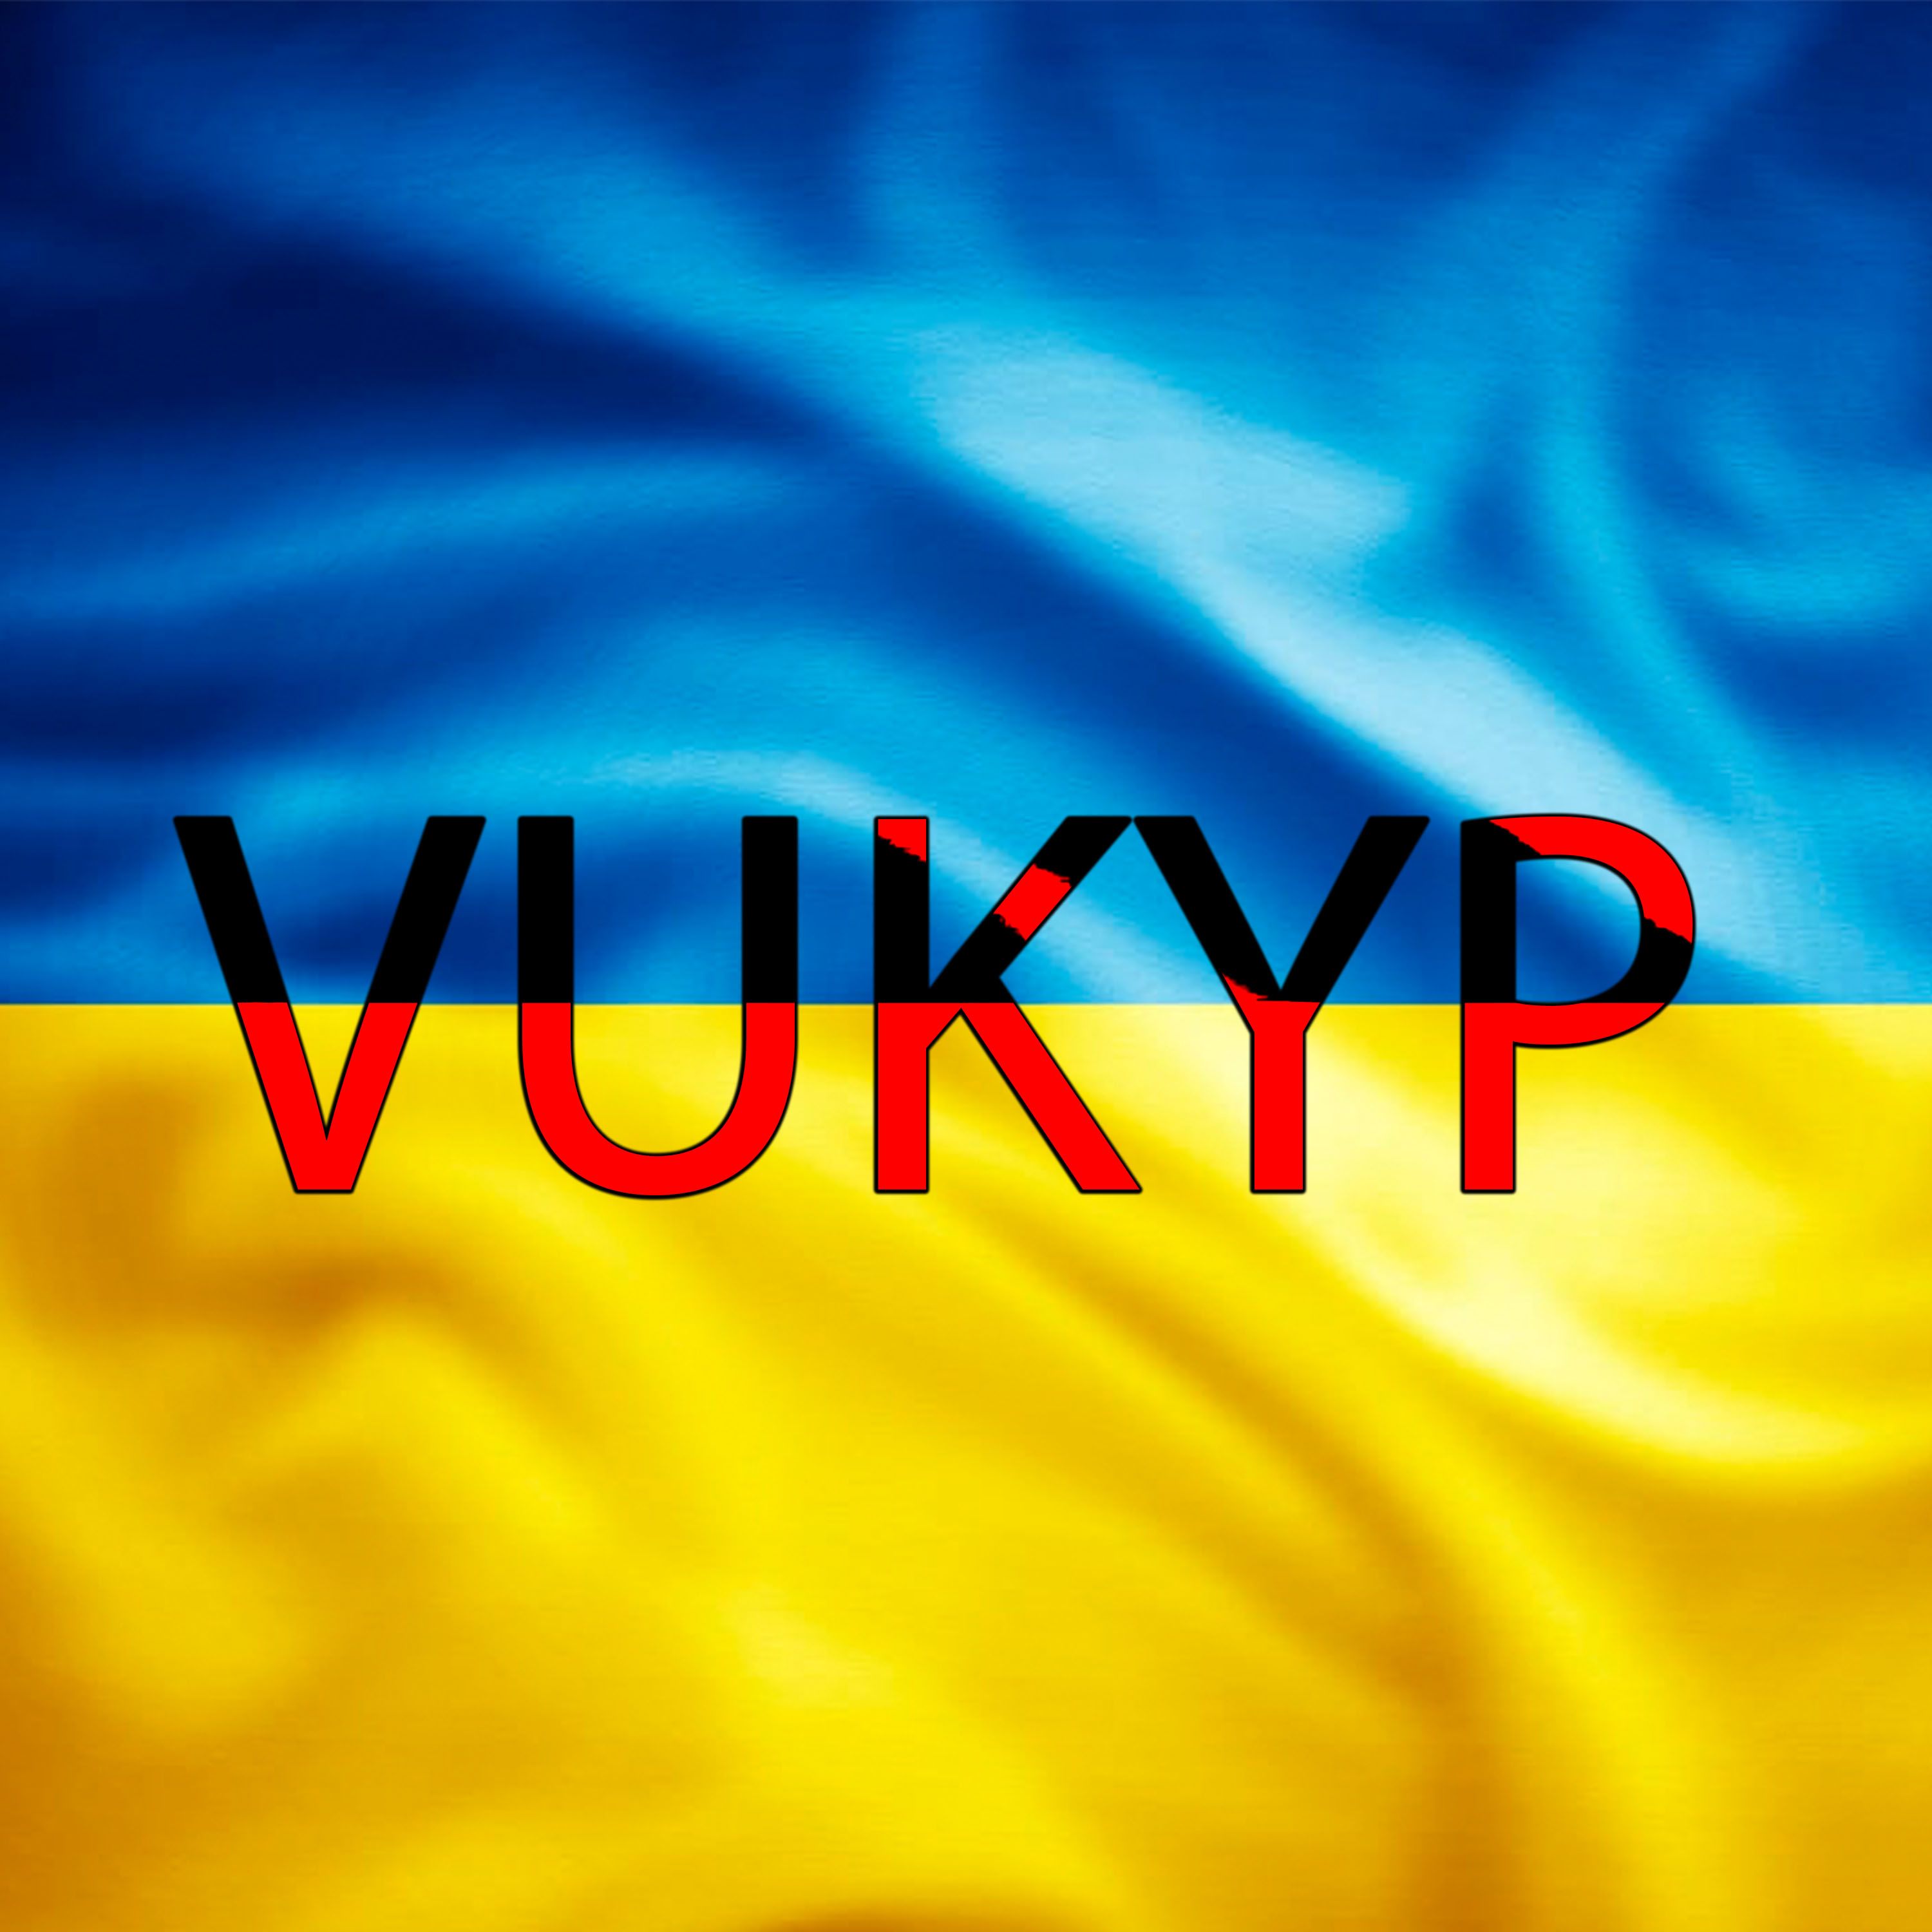 Deskargatu Vukyp - UKR